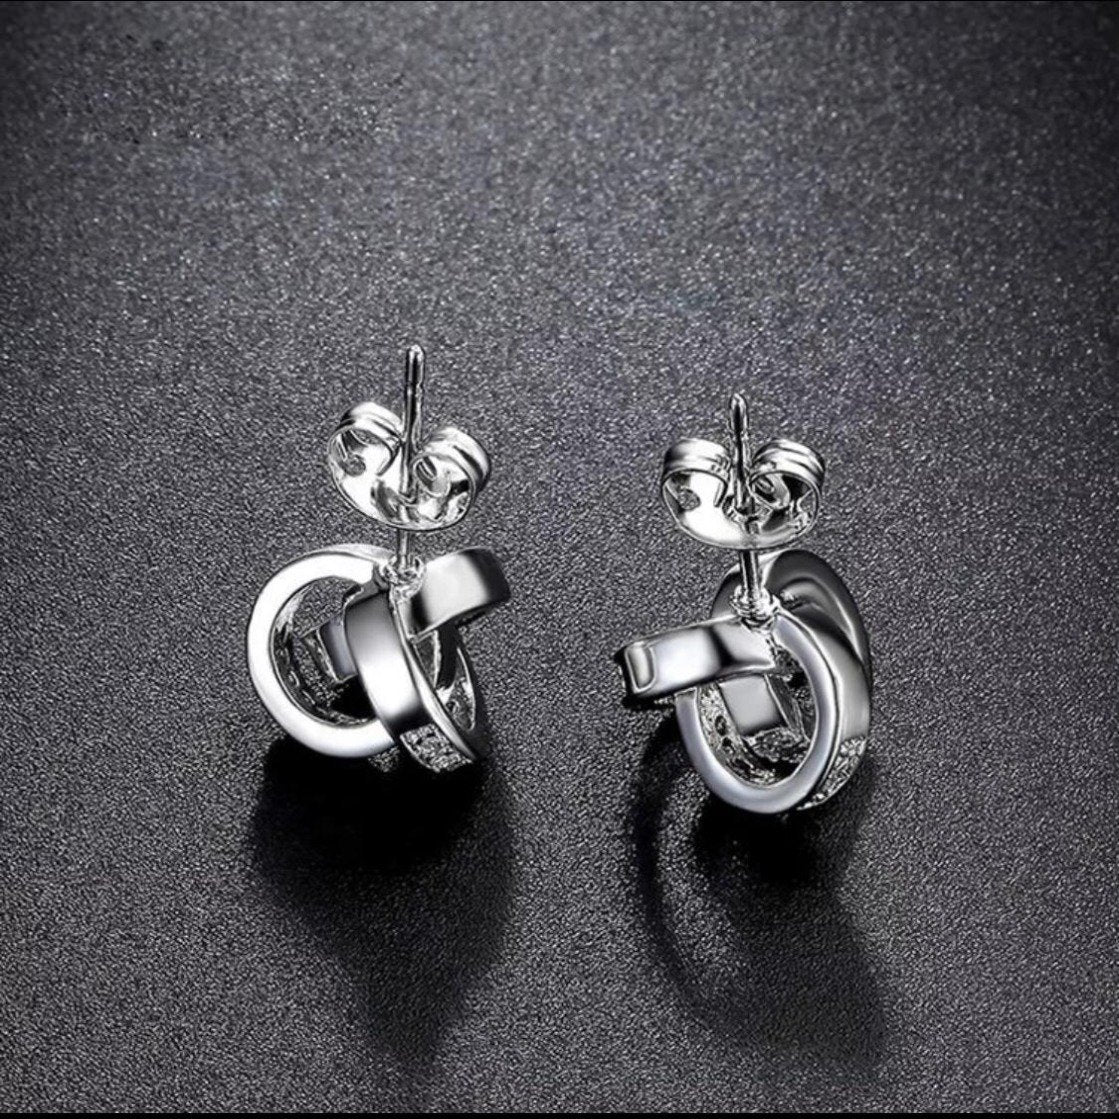 Atomic Stud Earrings/18K White Gold & Cubic Zirconia - infinityXinfinity.co.uk